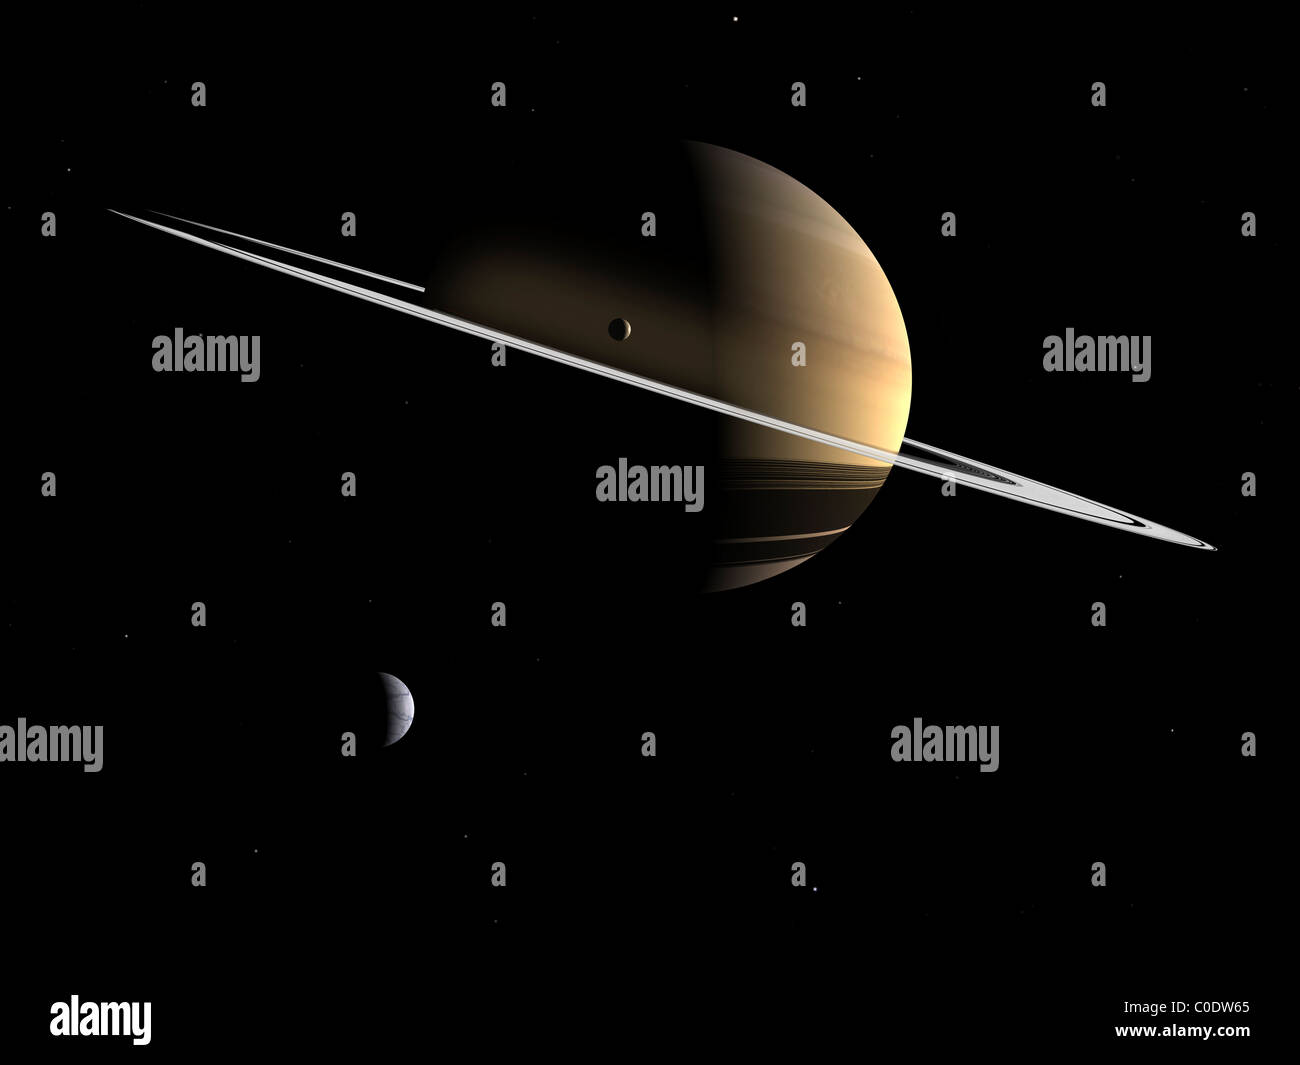 Concepto artístico de Saturno y sus lunas Dione y Tetis. Foto de stock